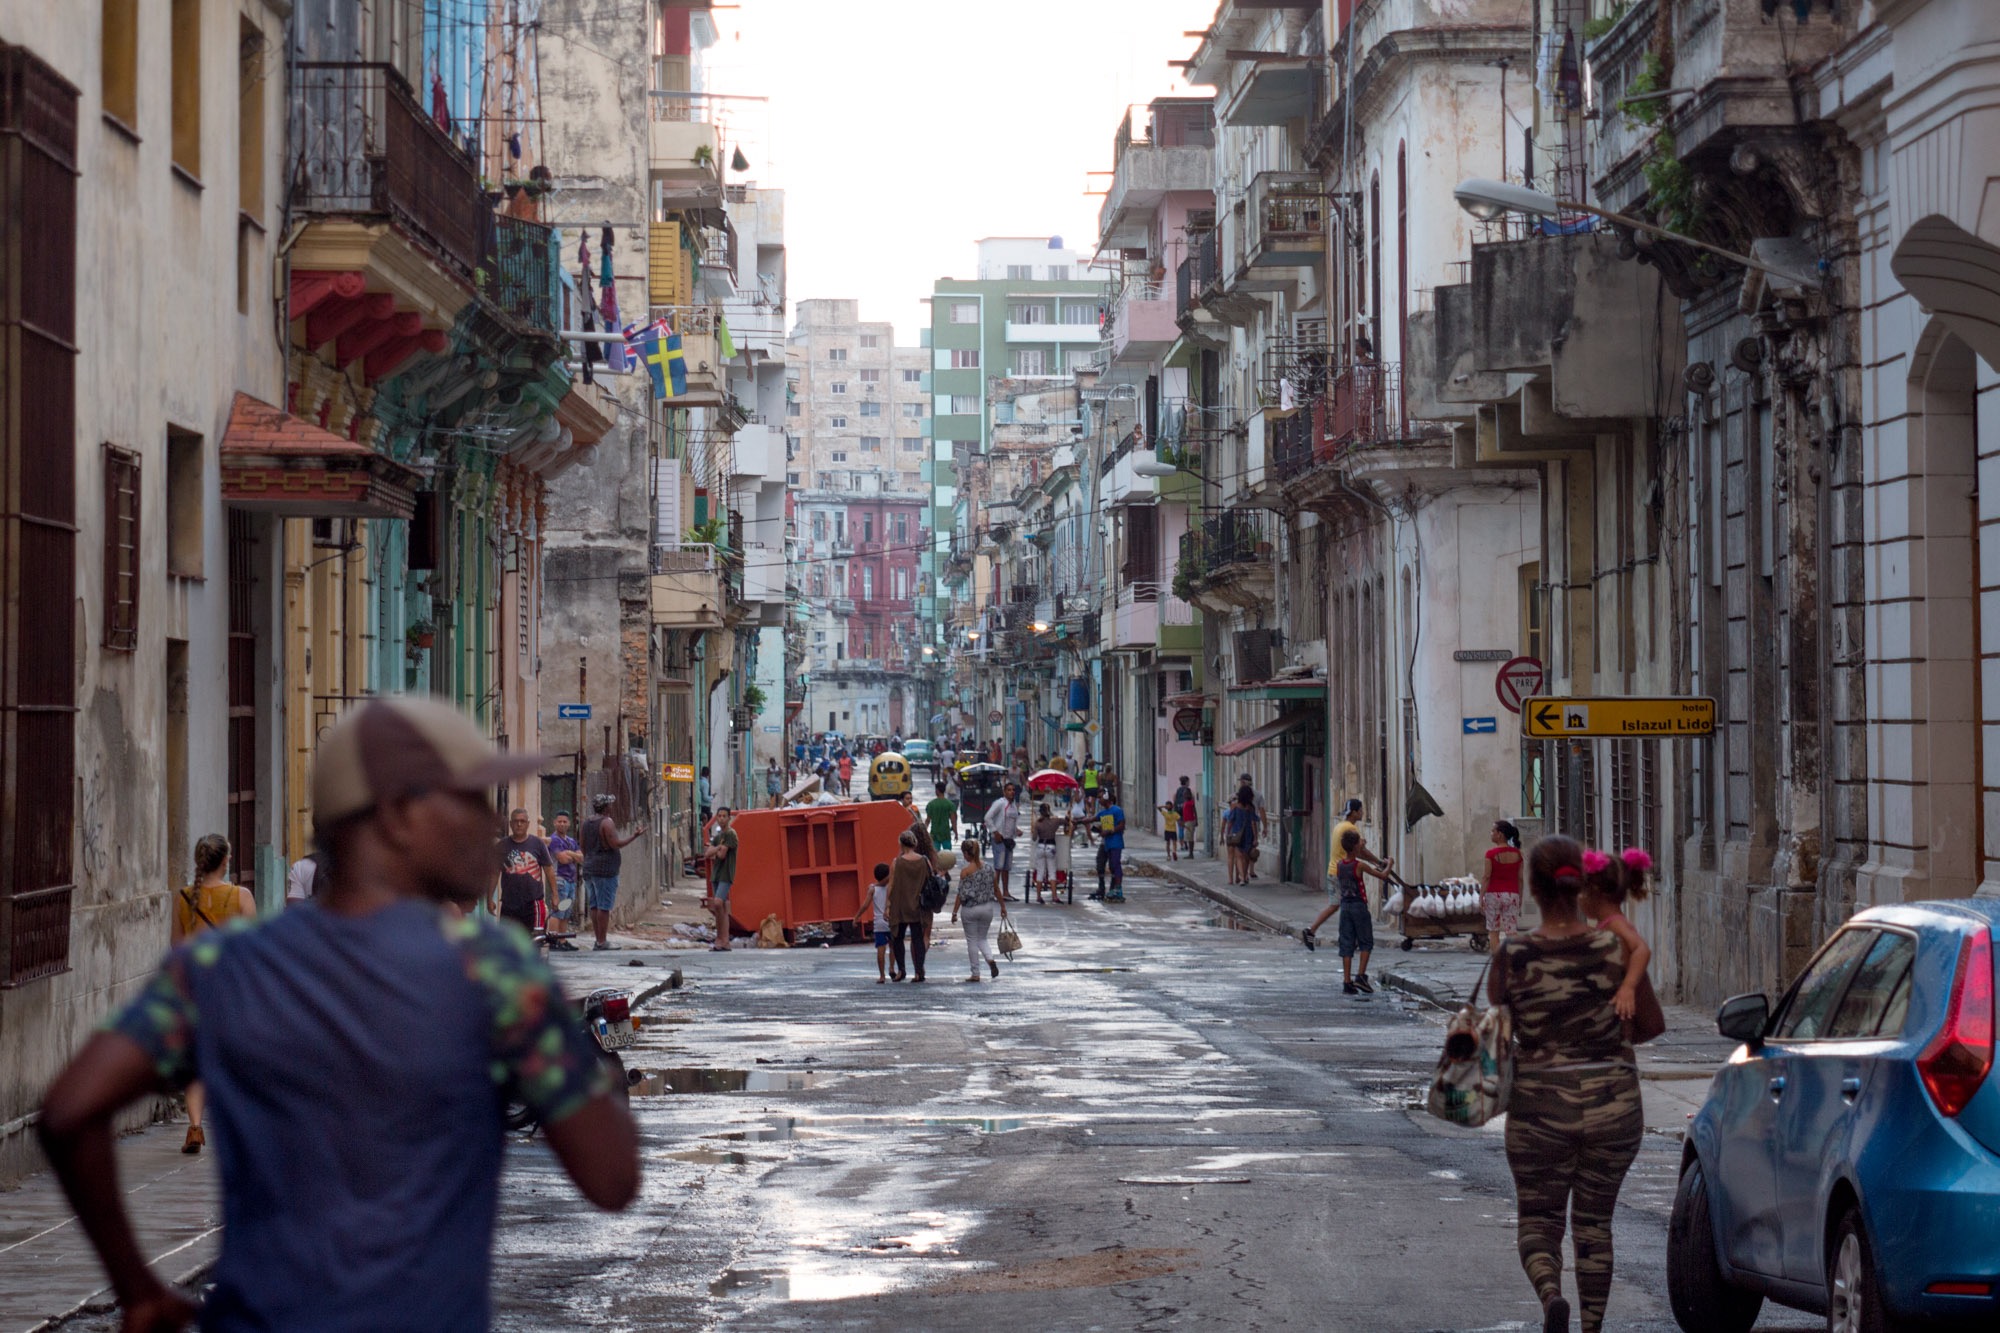 People walking down the street in Havana Cuba.